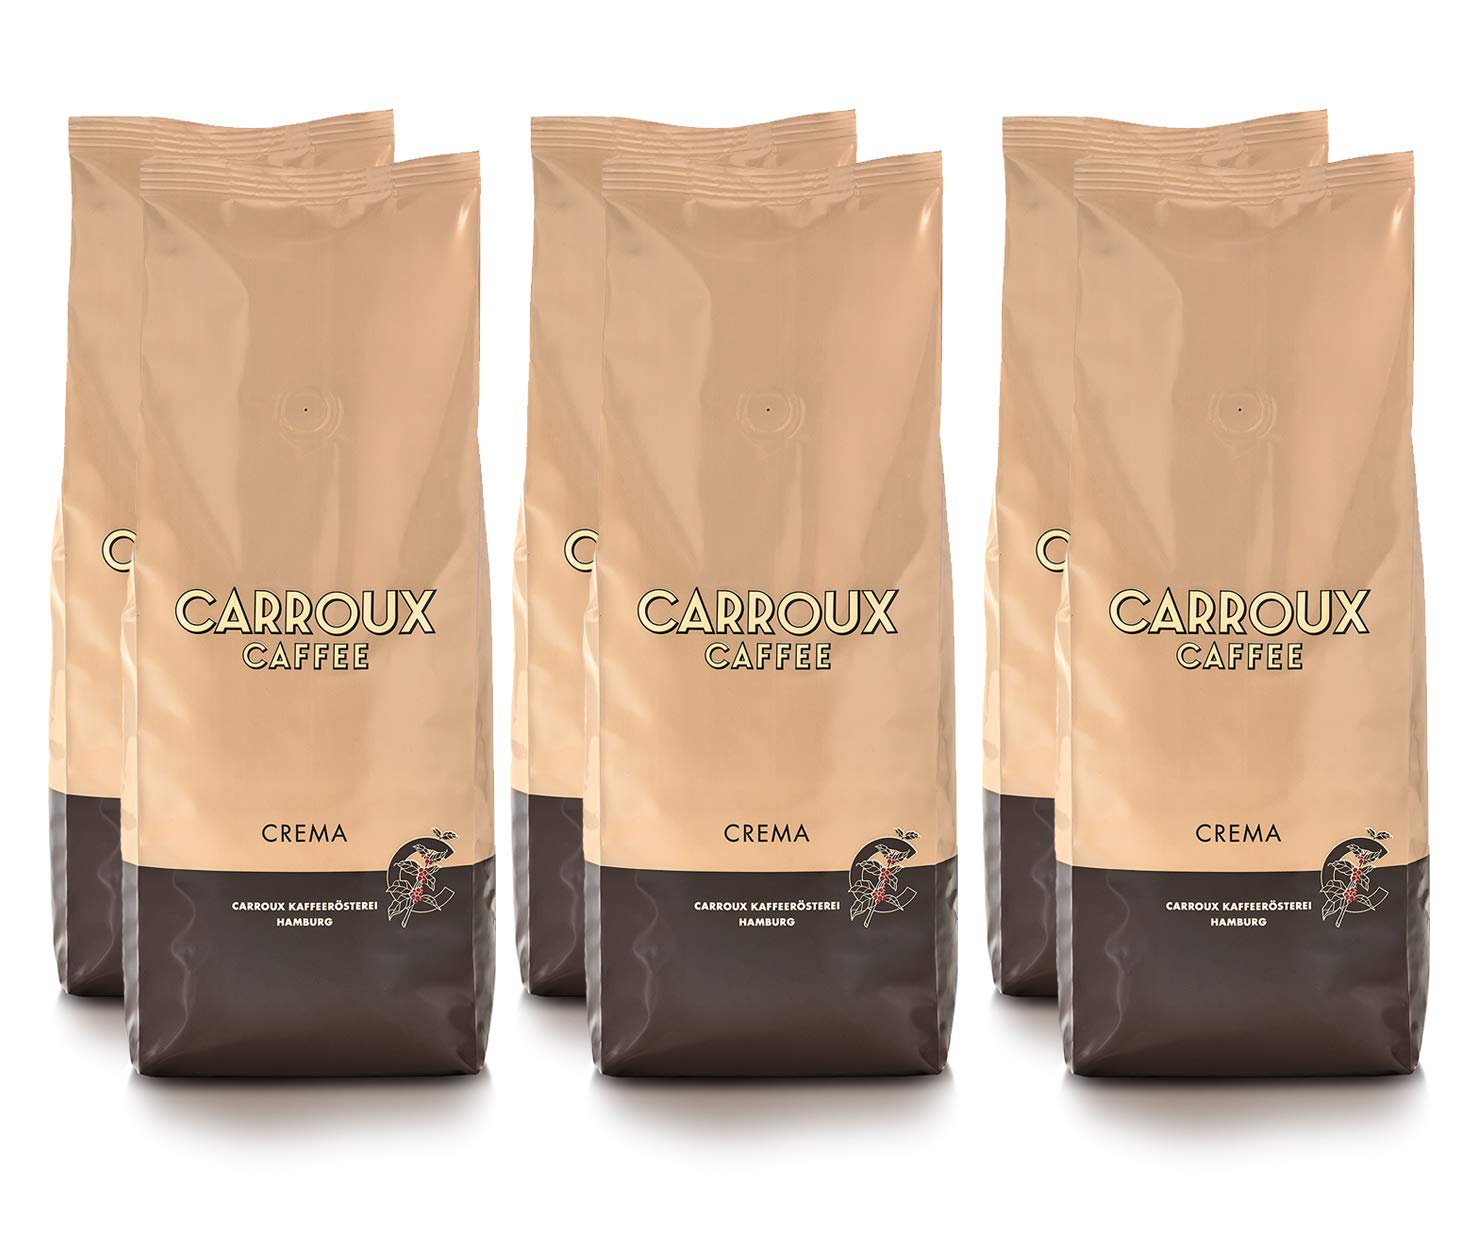 CARROUX Kaffee Crema ganze Bohnen (6x 500g) - Premium Kaffeebohnen aus Hamburg - Traditionell frisch geröstet